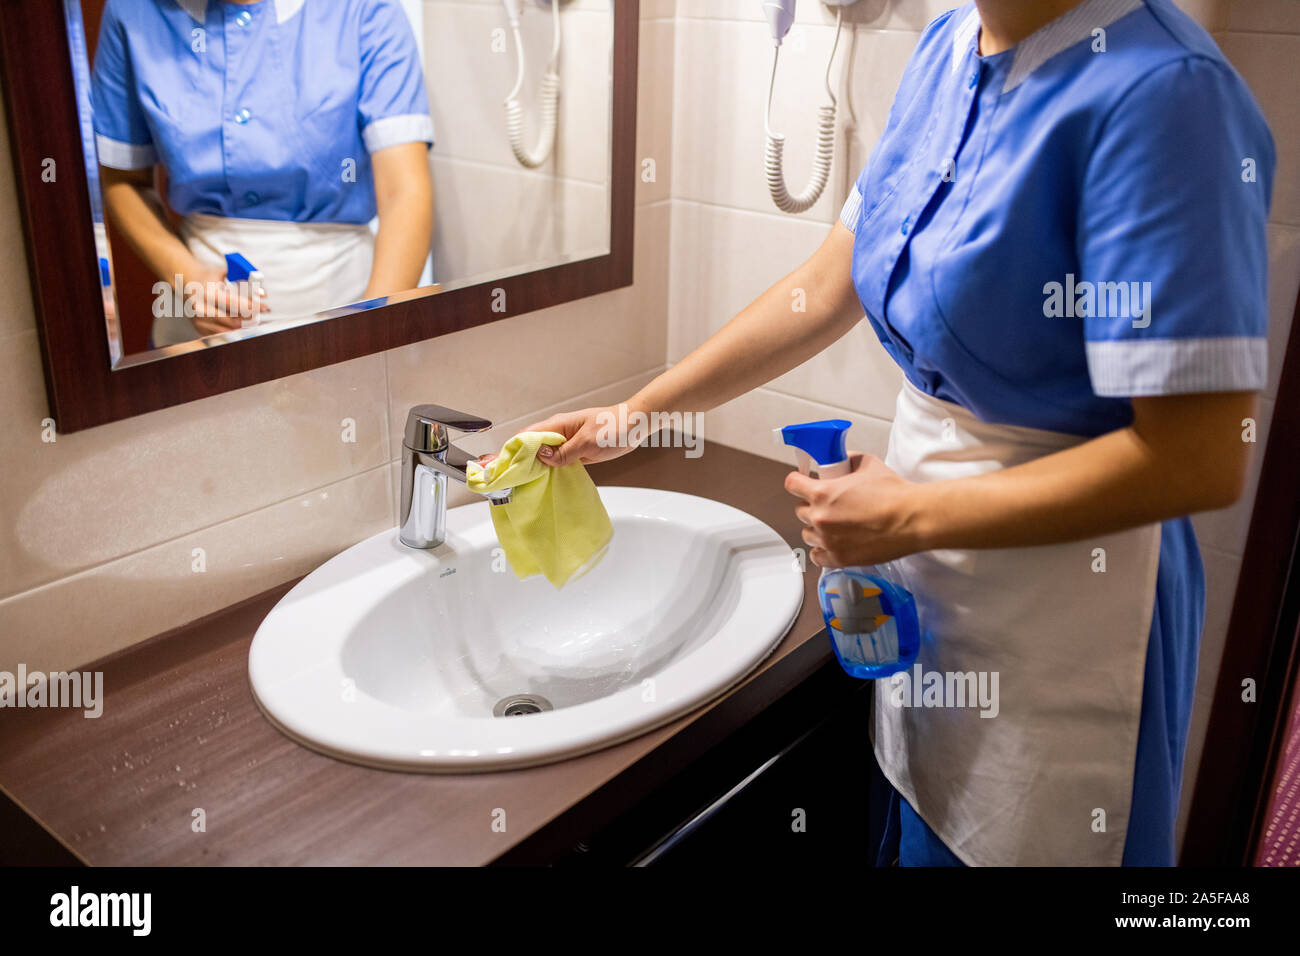 Jeune femme de chambre en uniforme, debout devant un miroir dans une salle de bains privative et un lavabo avec un détergent de nettoyage Banque D'Images